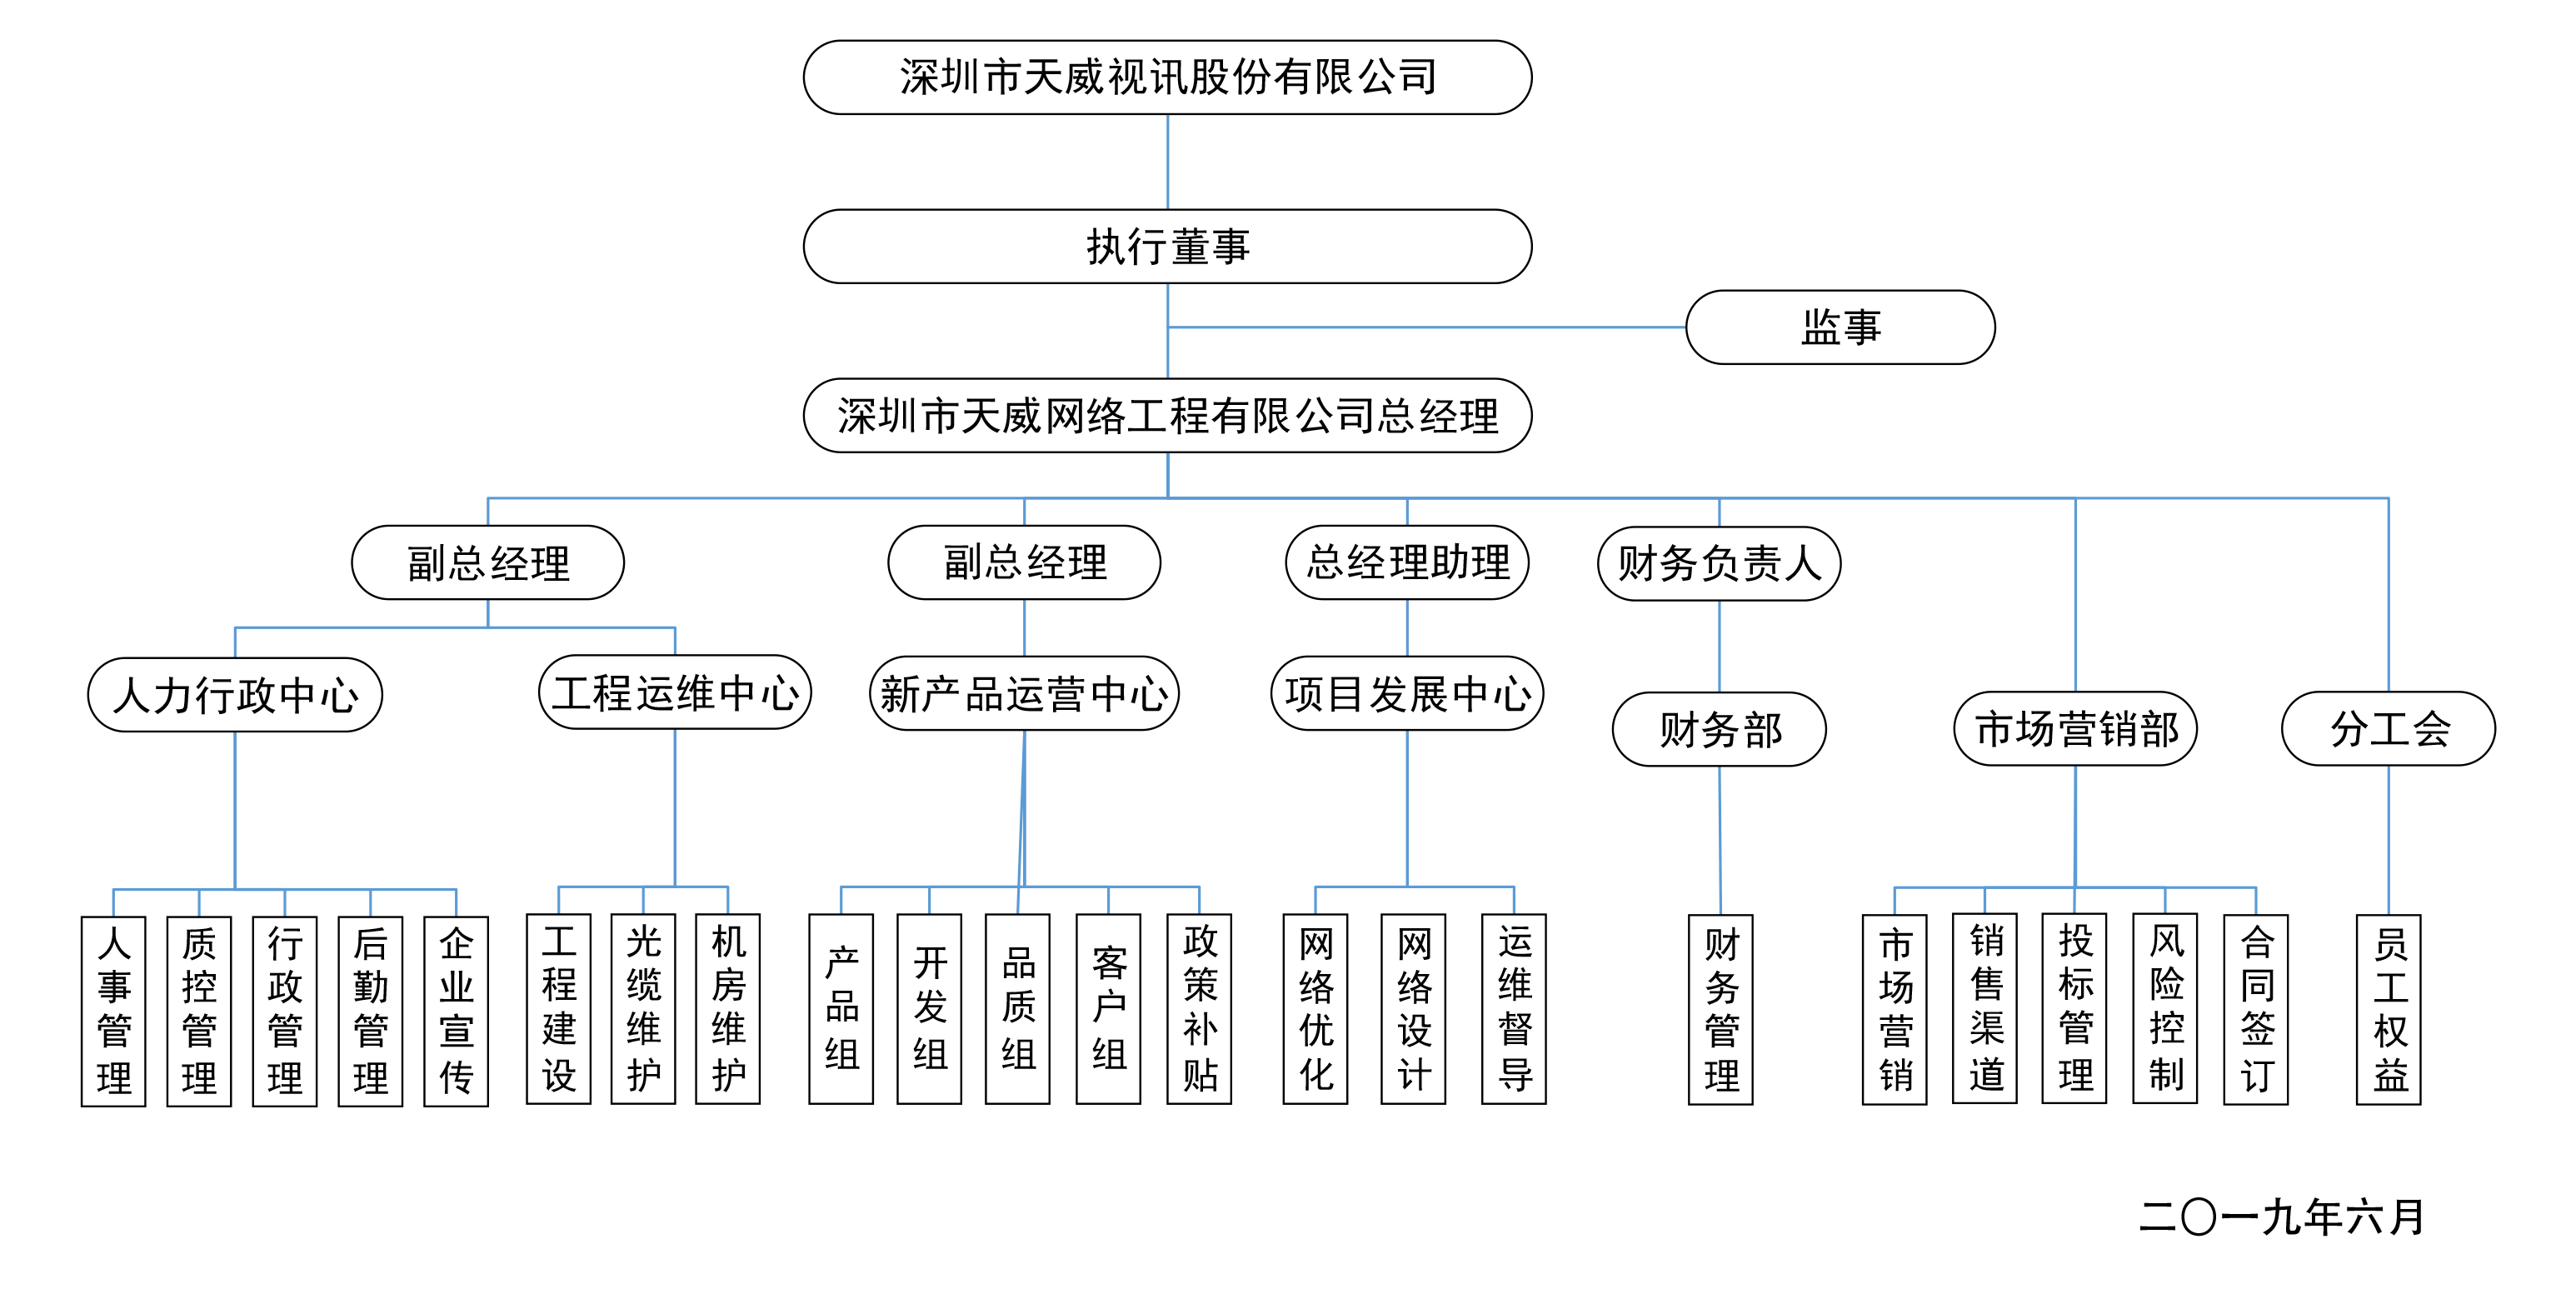 天威網絡工程有限公司組織架構圖(1).png